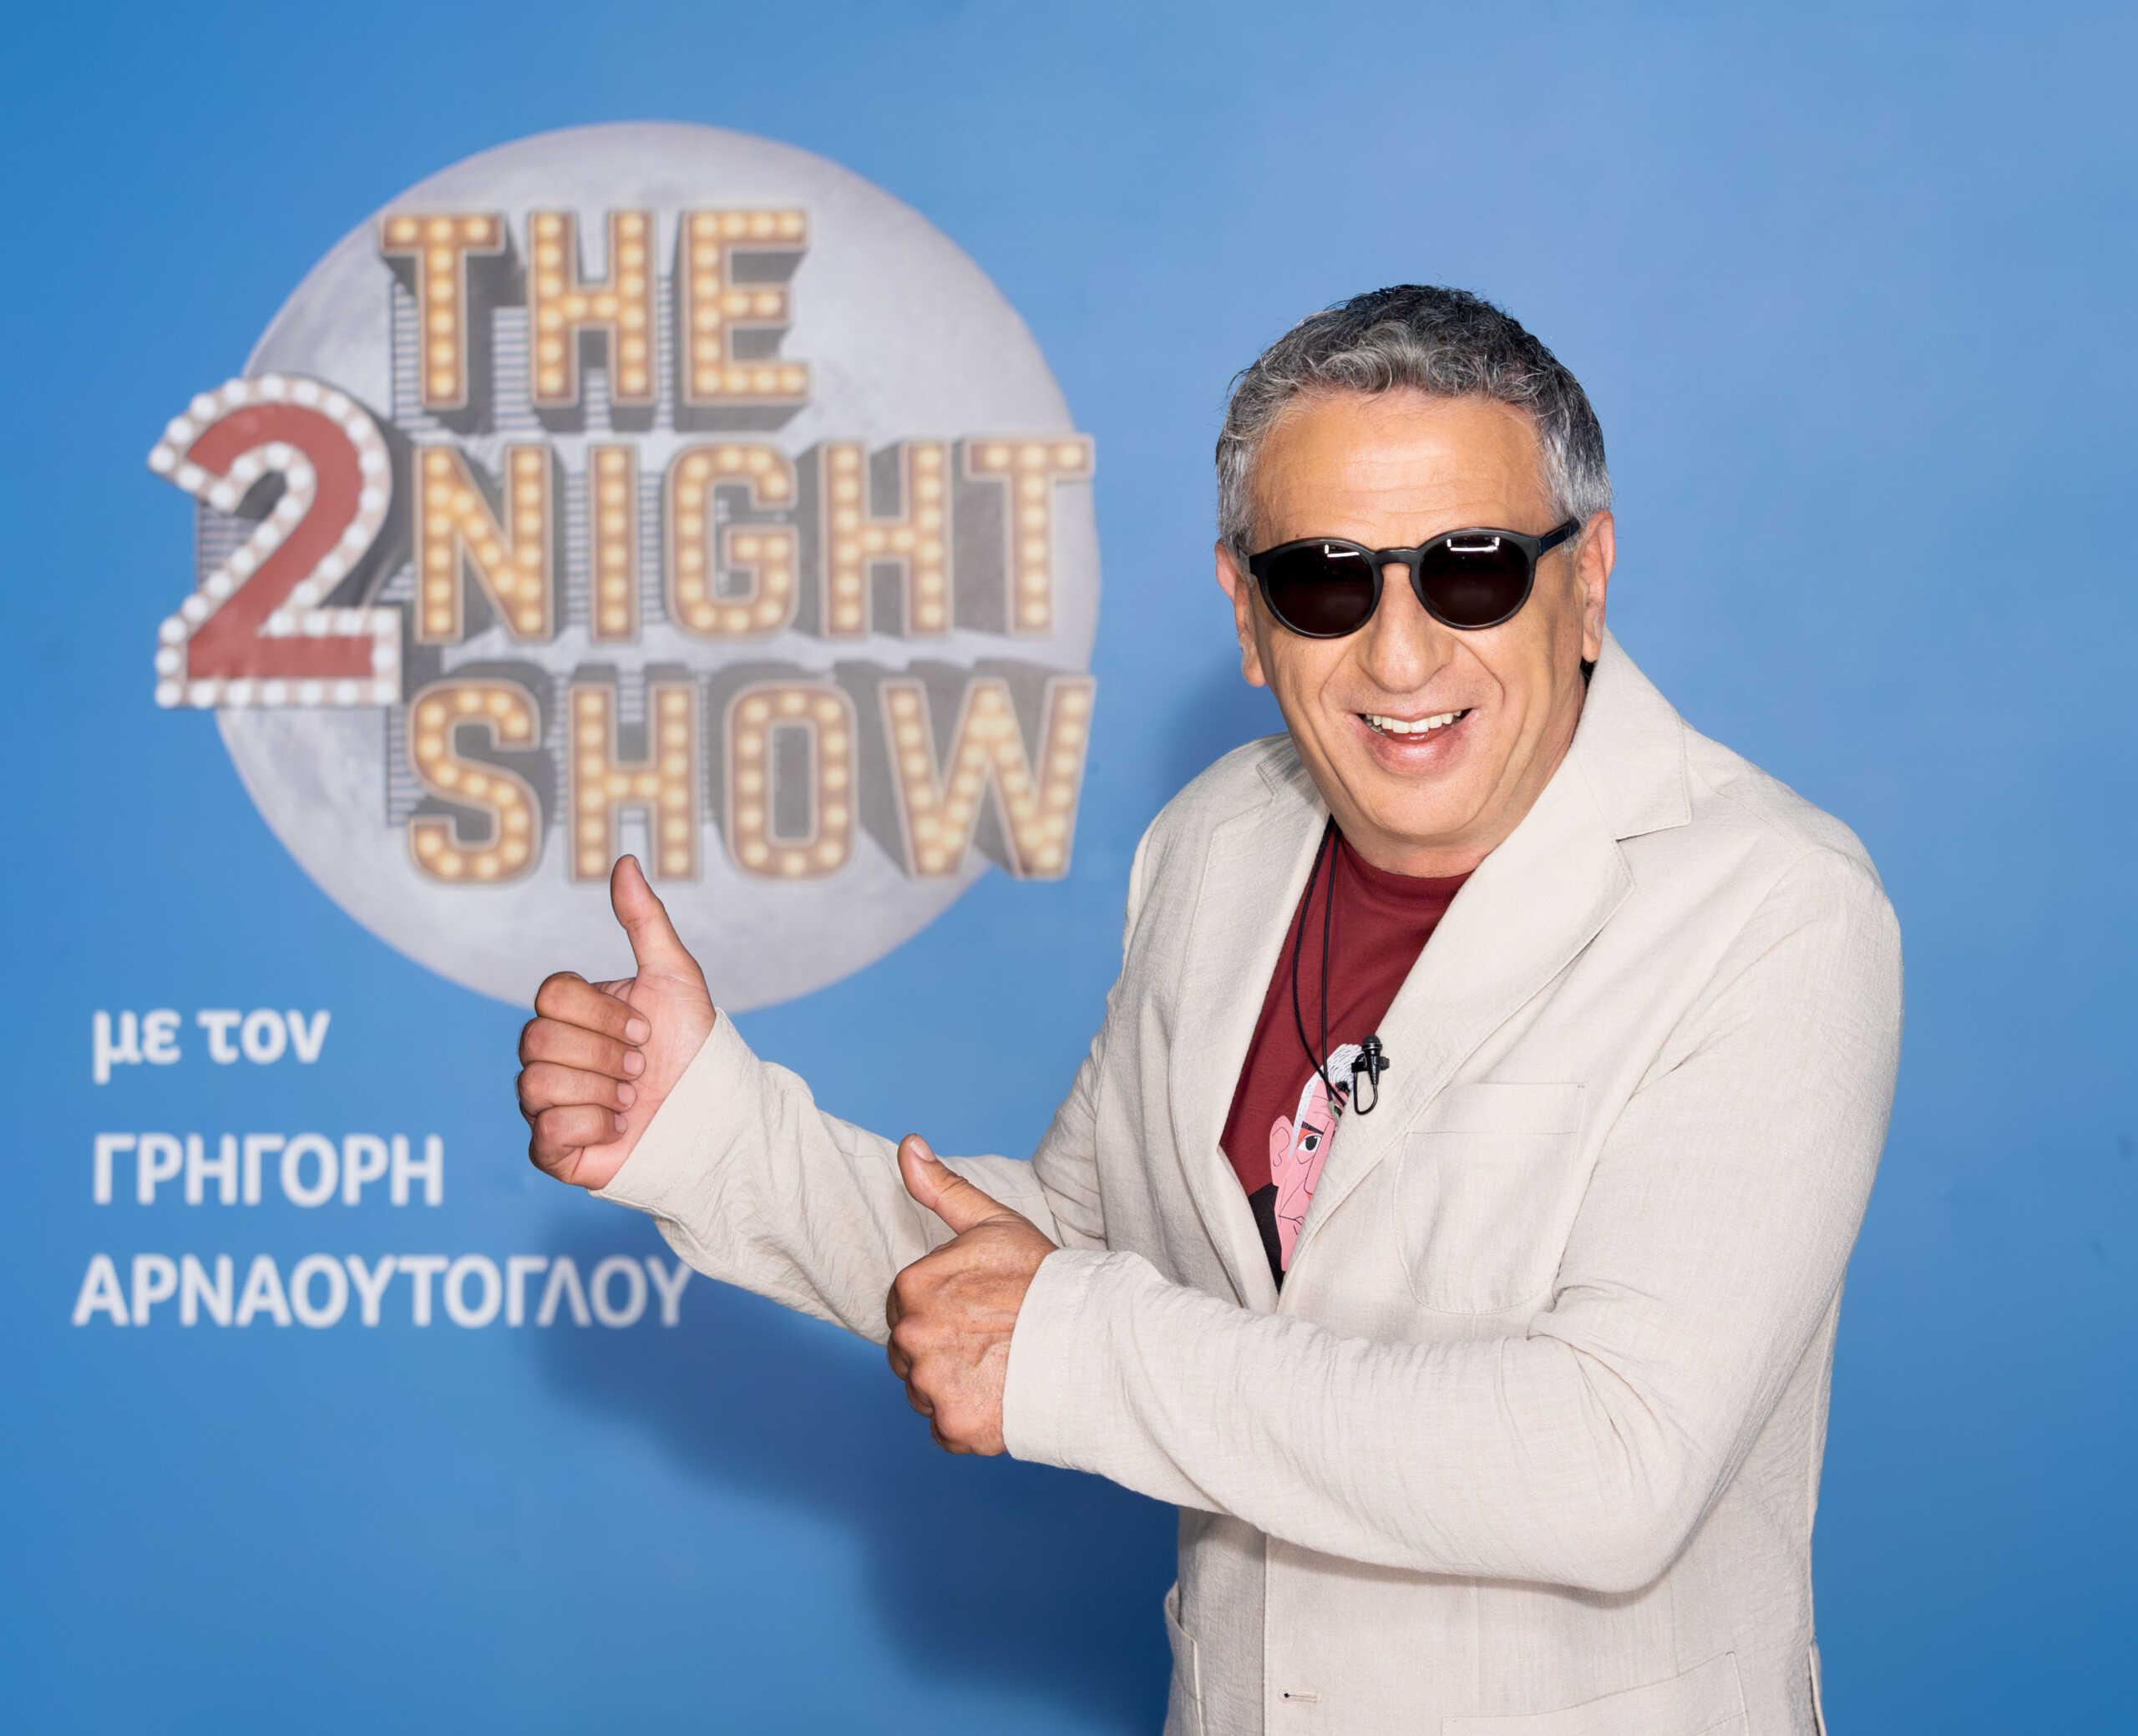 Κώστας Κόκλας και Στέλλα Μπεζαντάκου απόψε στο 2Night Show με τον Γρηγόρη Αρναούτογλου